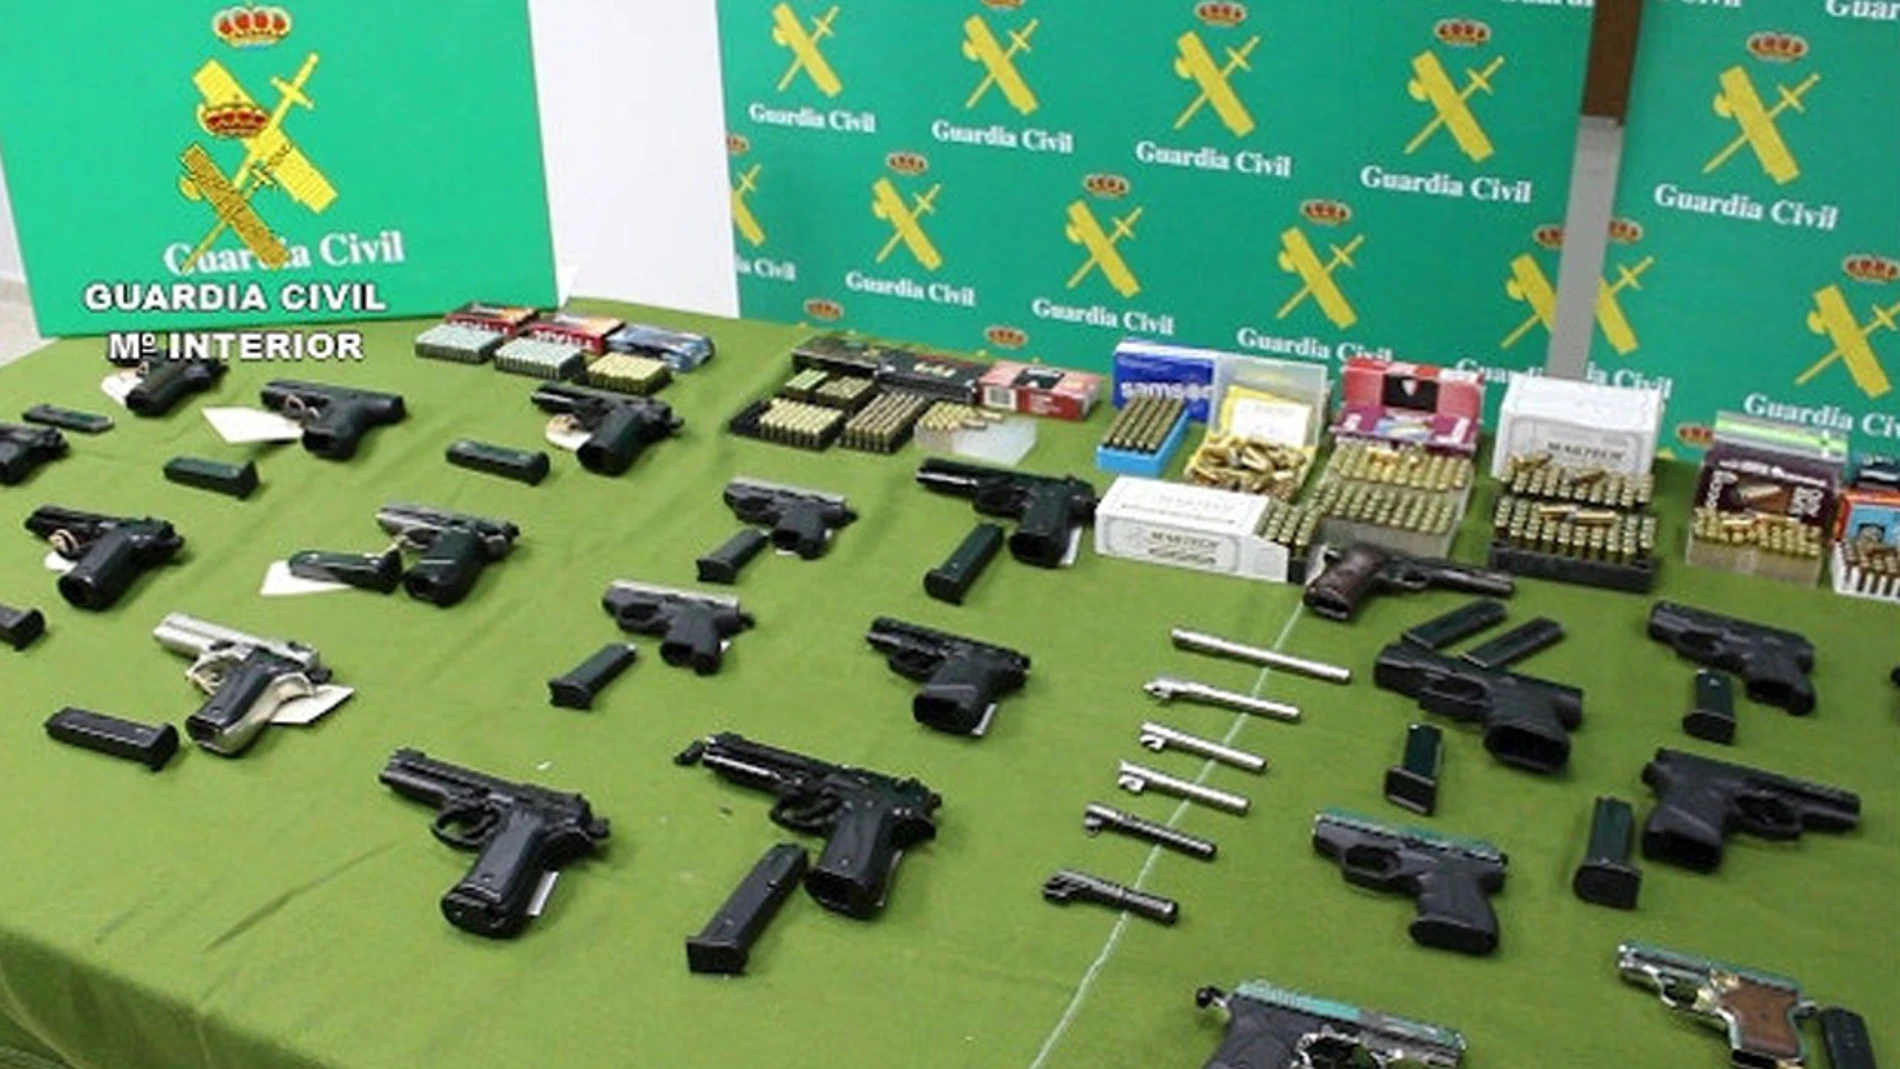 Armas incautadas en el operativo de la Guardia Civil